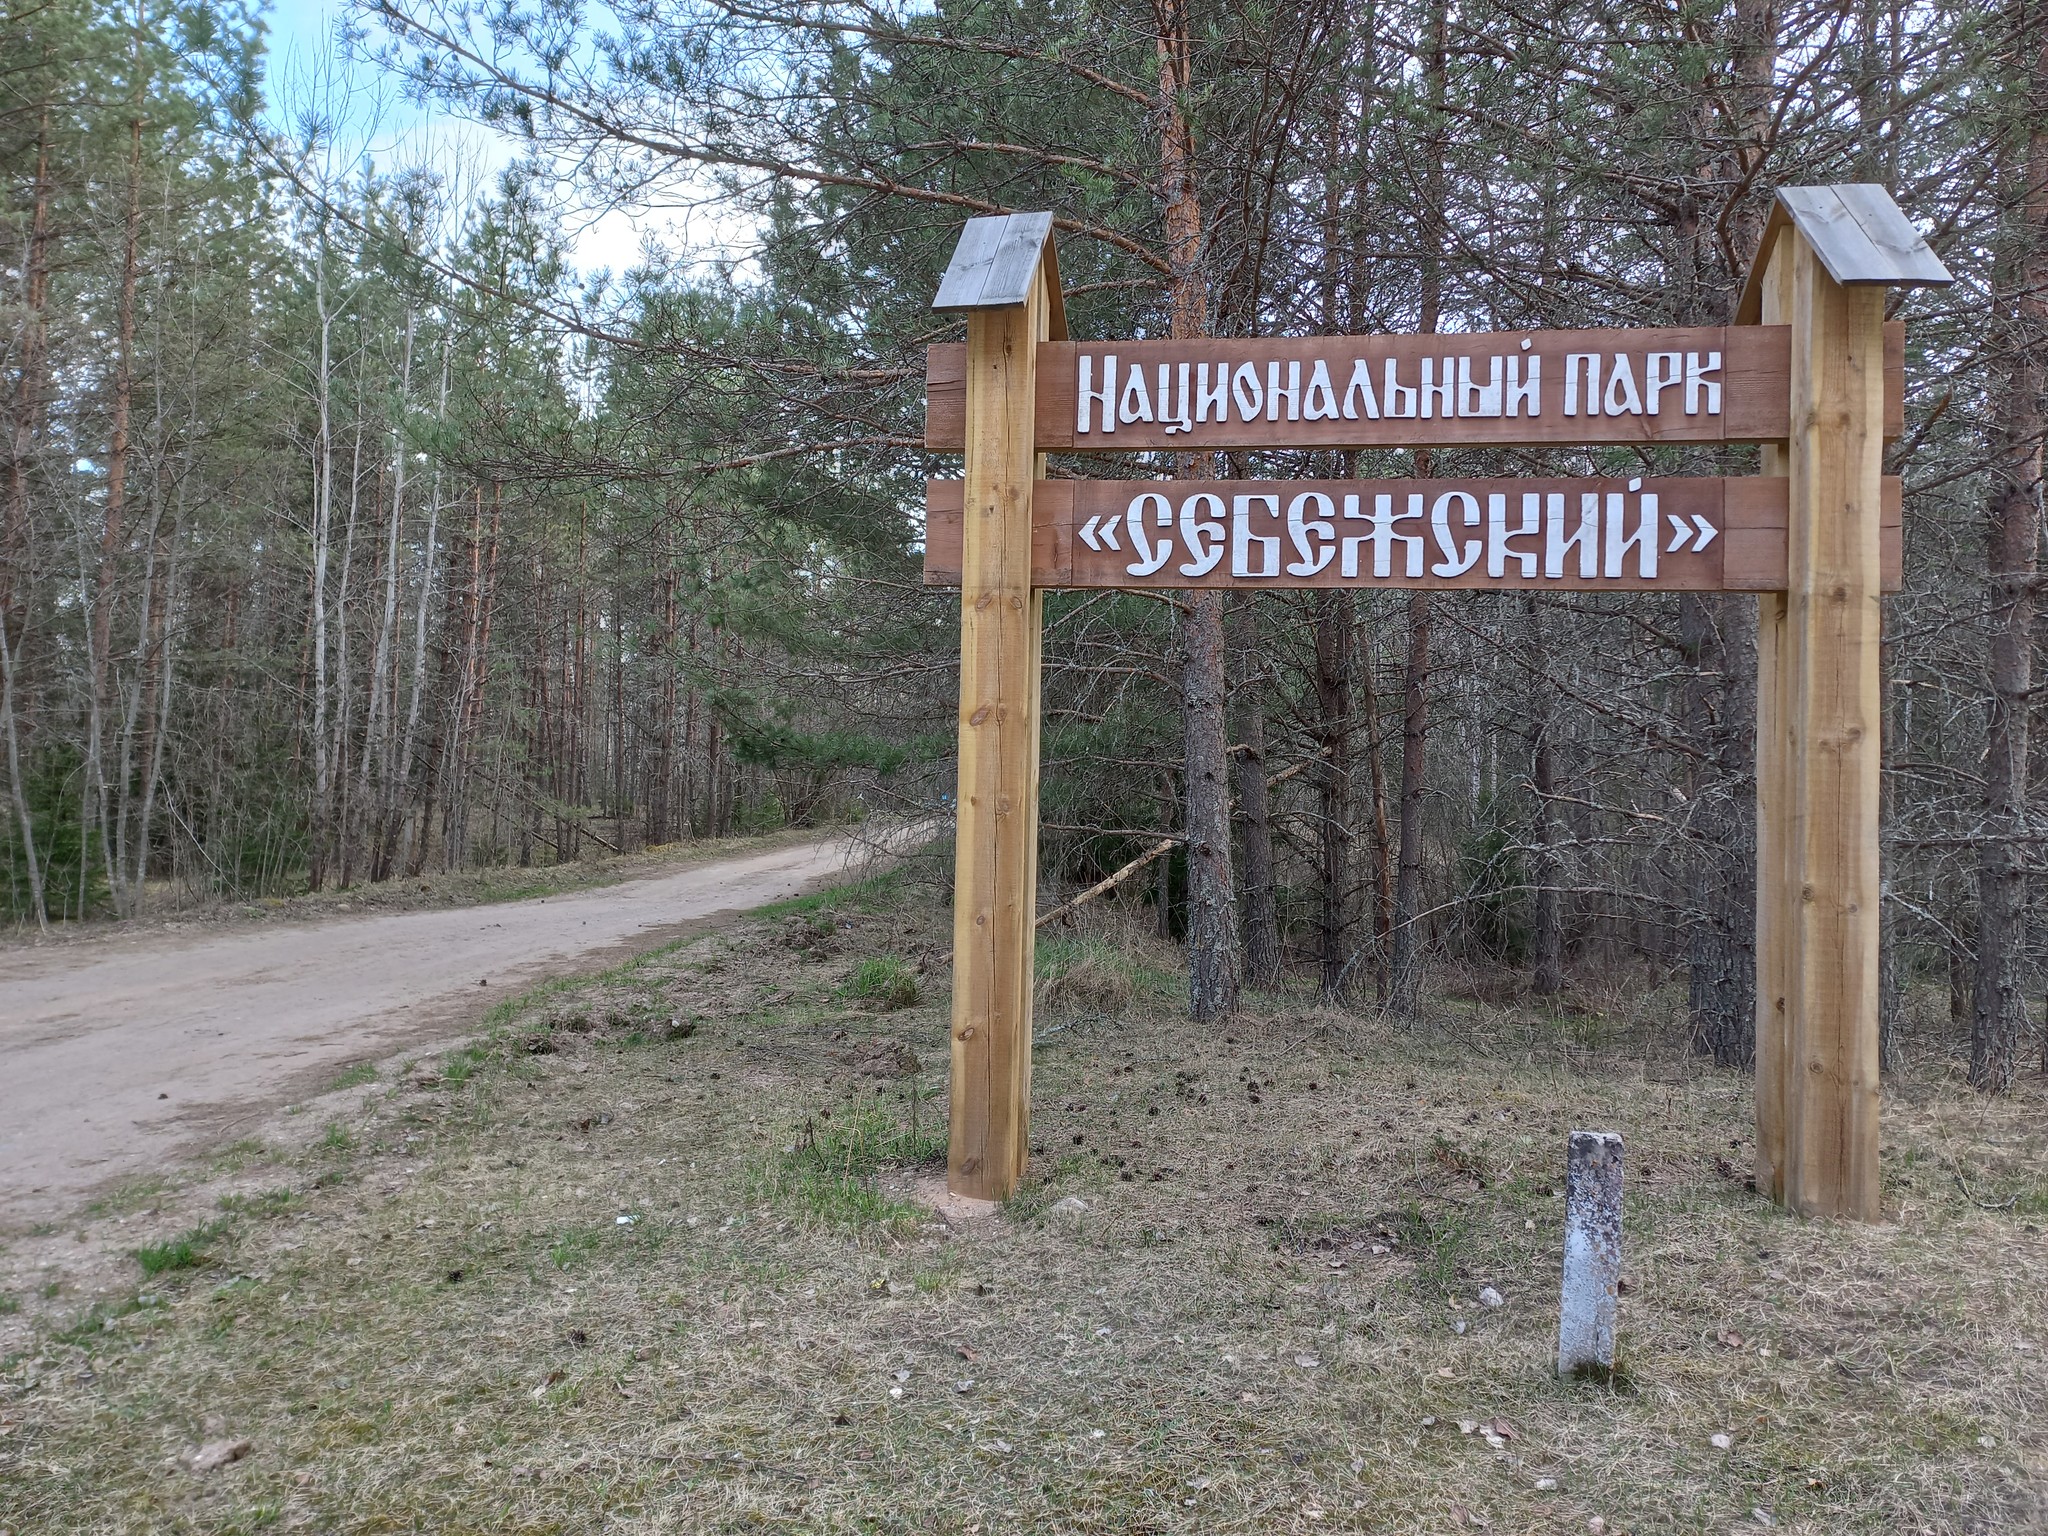 себежский национальный парк псковская область